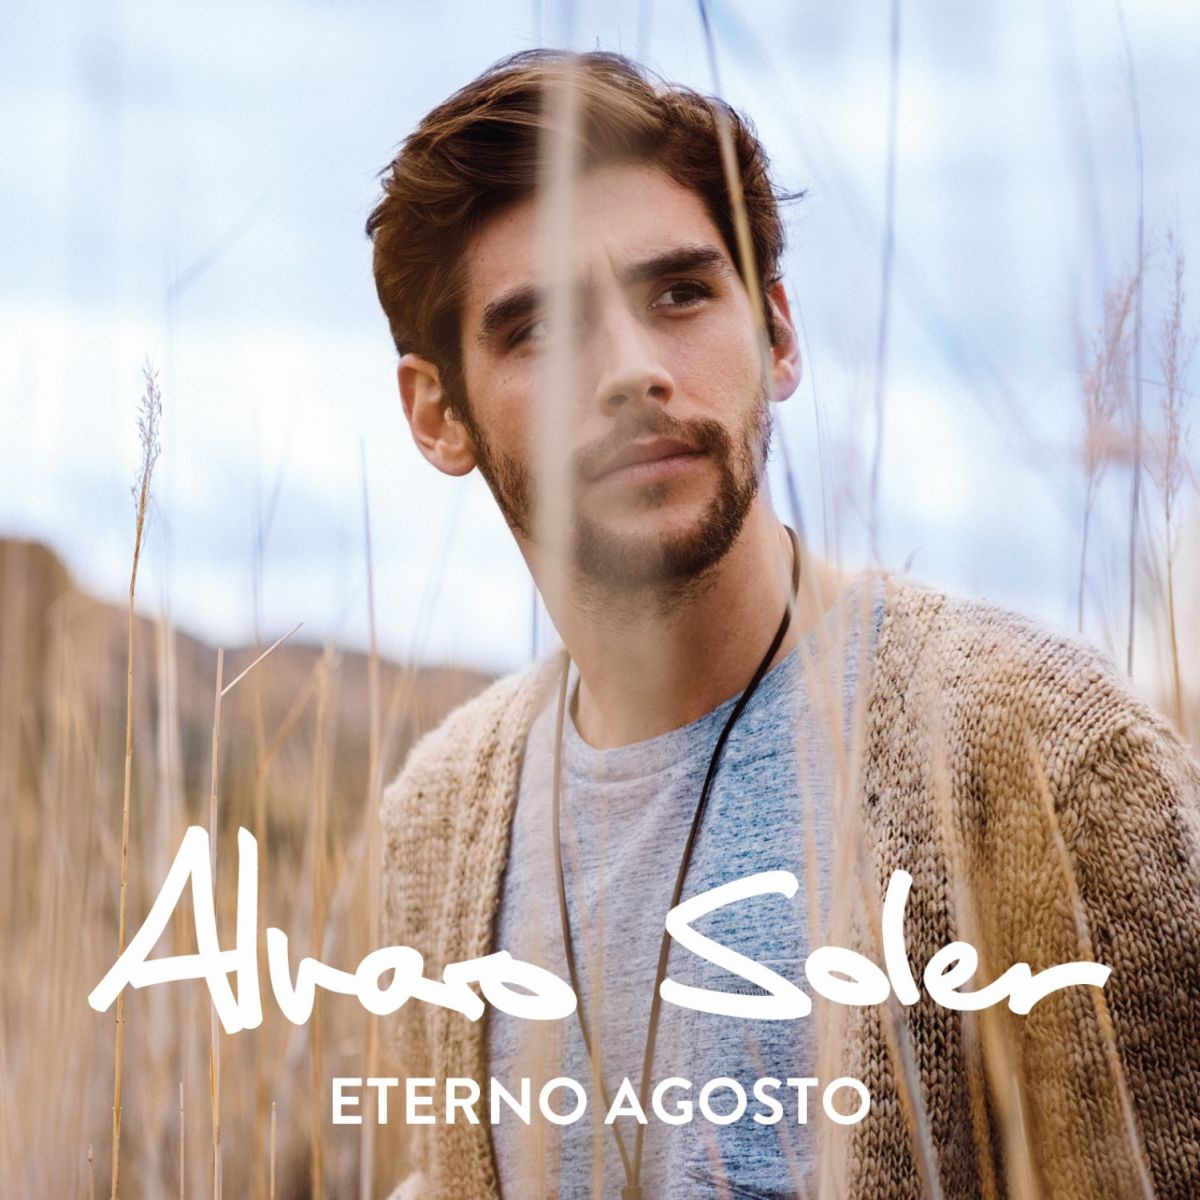 Libre(Alvaro Soler單曲)